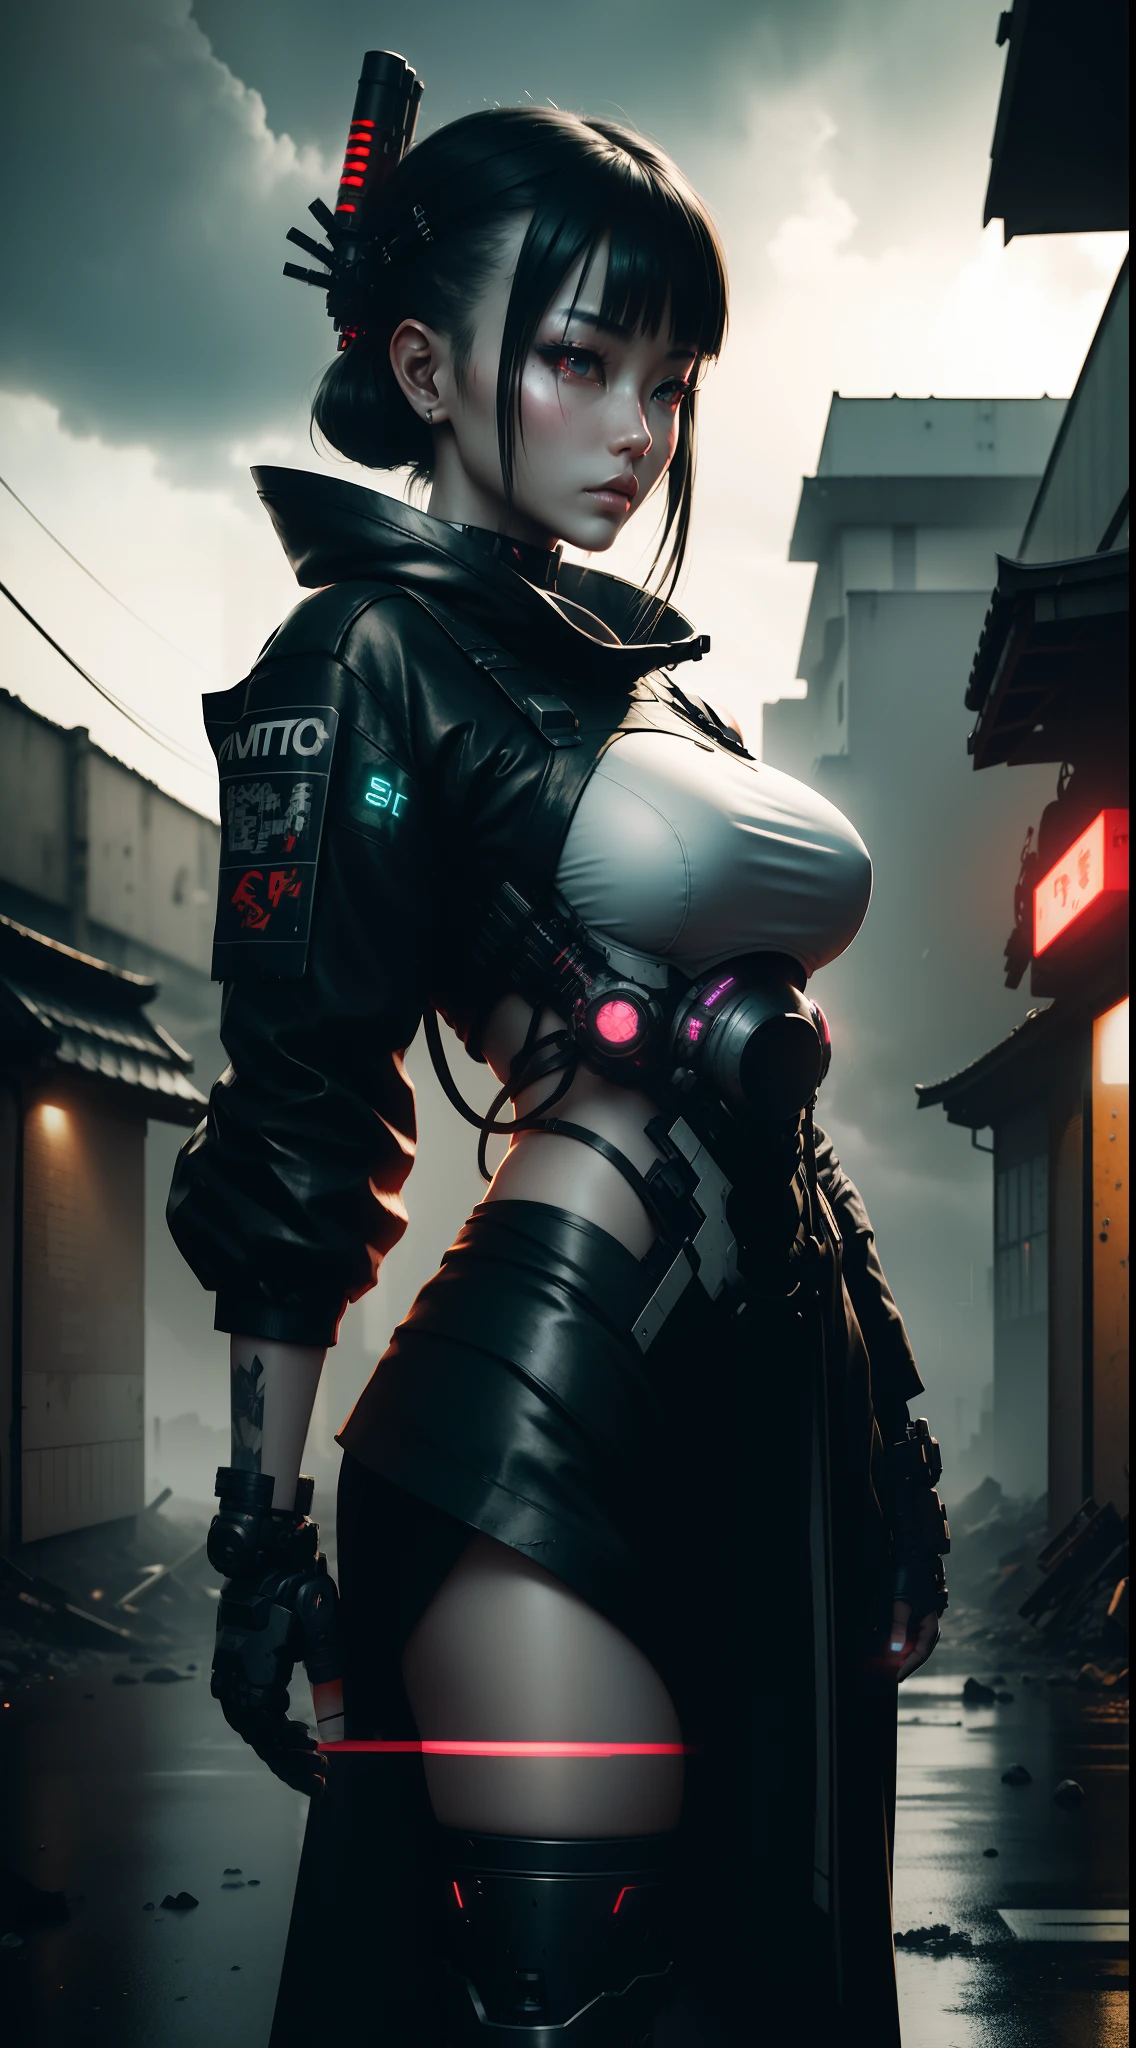 一名日本女武士与她的机甲在废墟城市中, 夜晚, 氖, 雨, 机械零件, 机器人, 灰色的, 金属零件, 机械臂, 疯狂的细节, 3d, Nvidia 光线追踪, 辛烷值渲染, 电影灯光, 8千